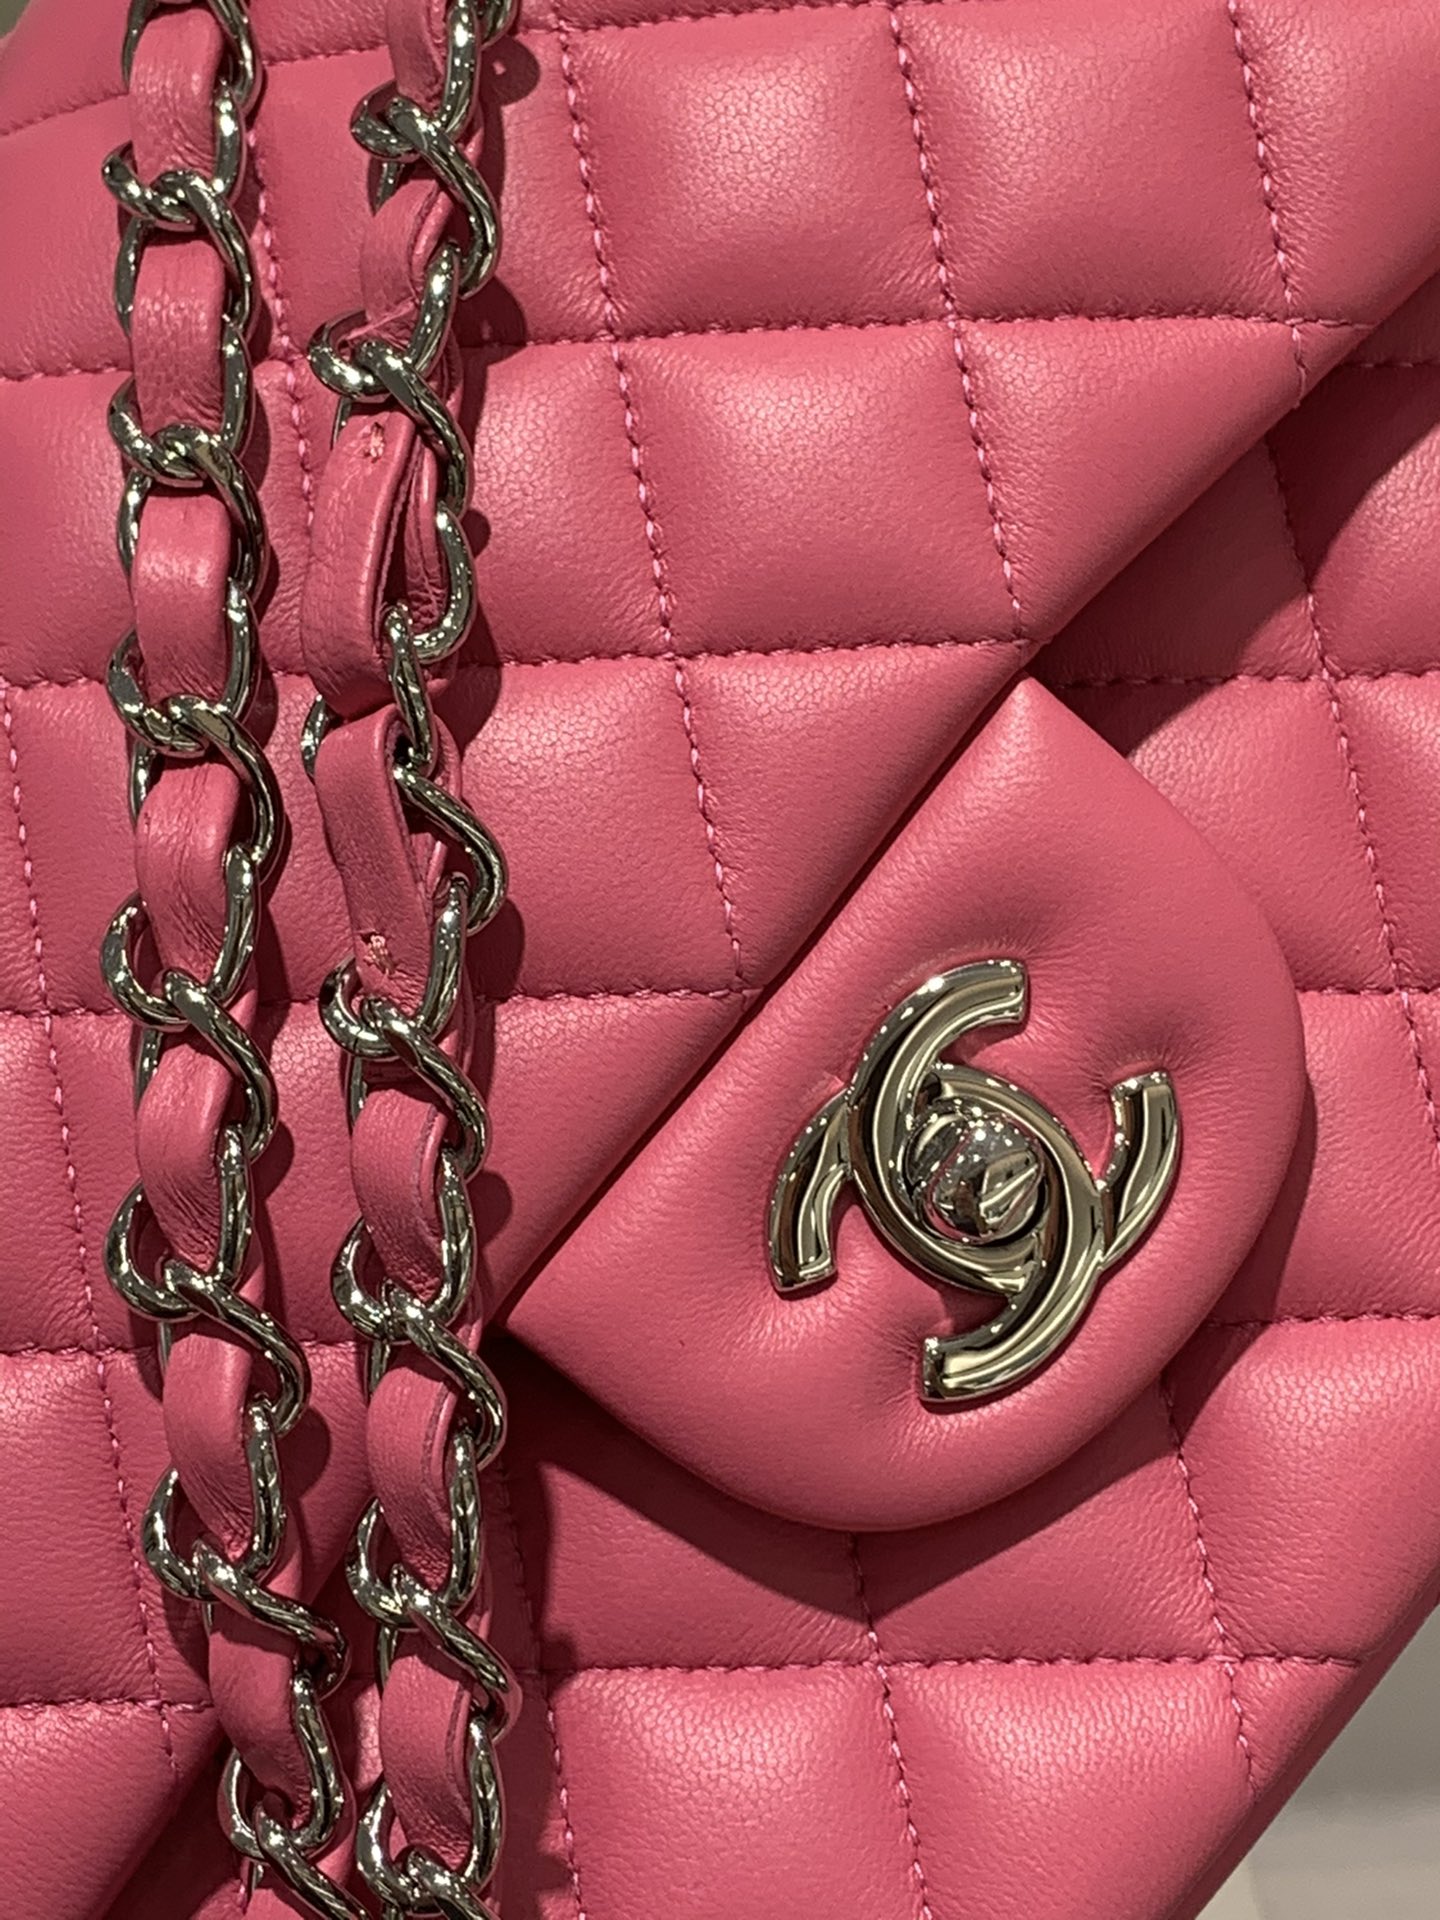 【真品级】Chanel CF 25  原厂bodin joyeux 羔羊皮  经典永远百搭 2022流行色 色蜜桃 银扣